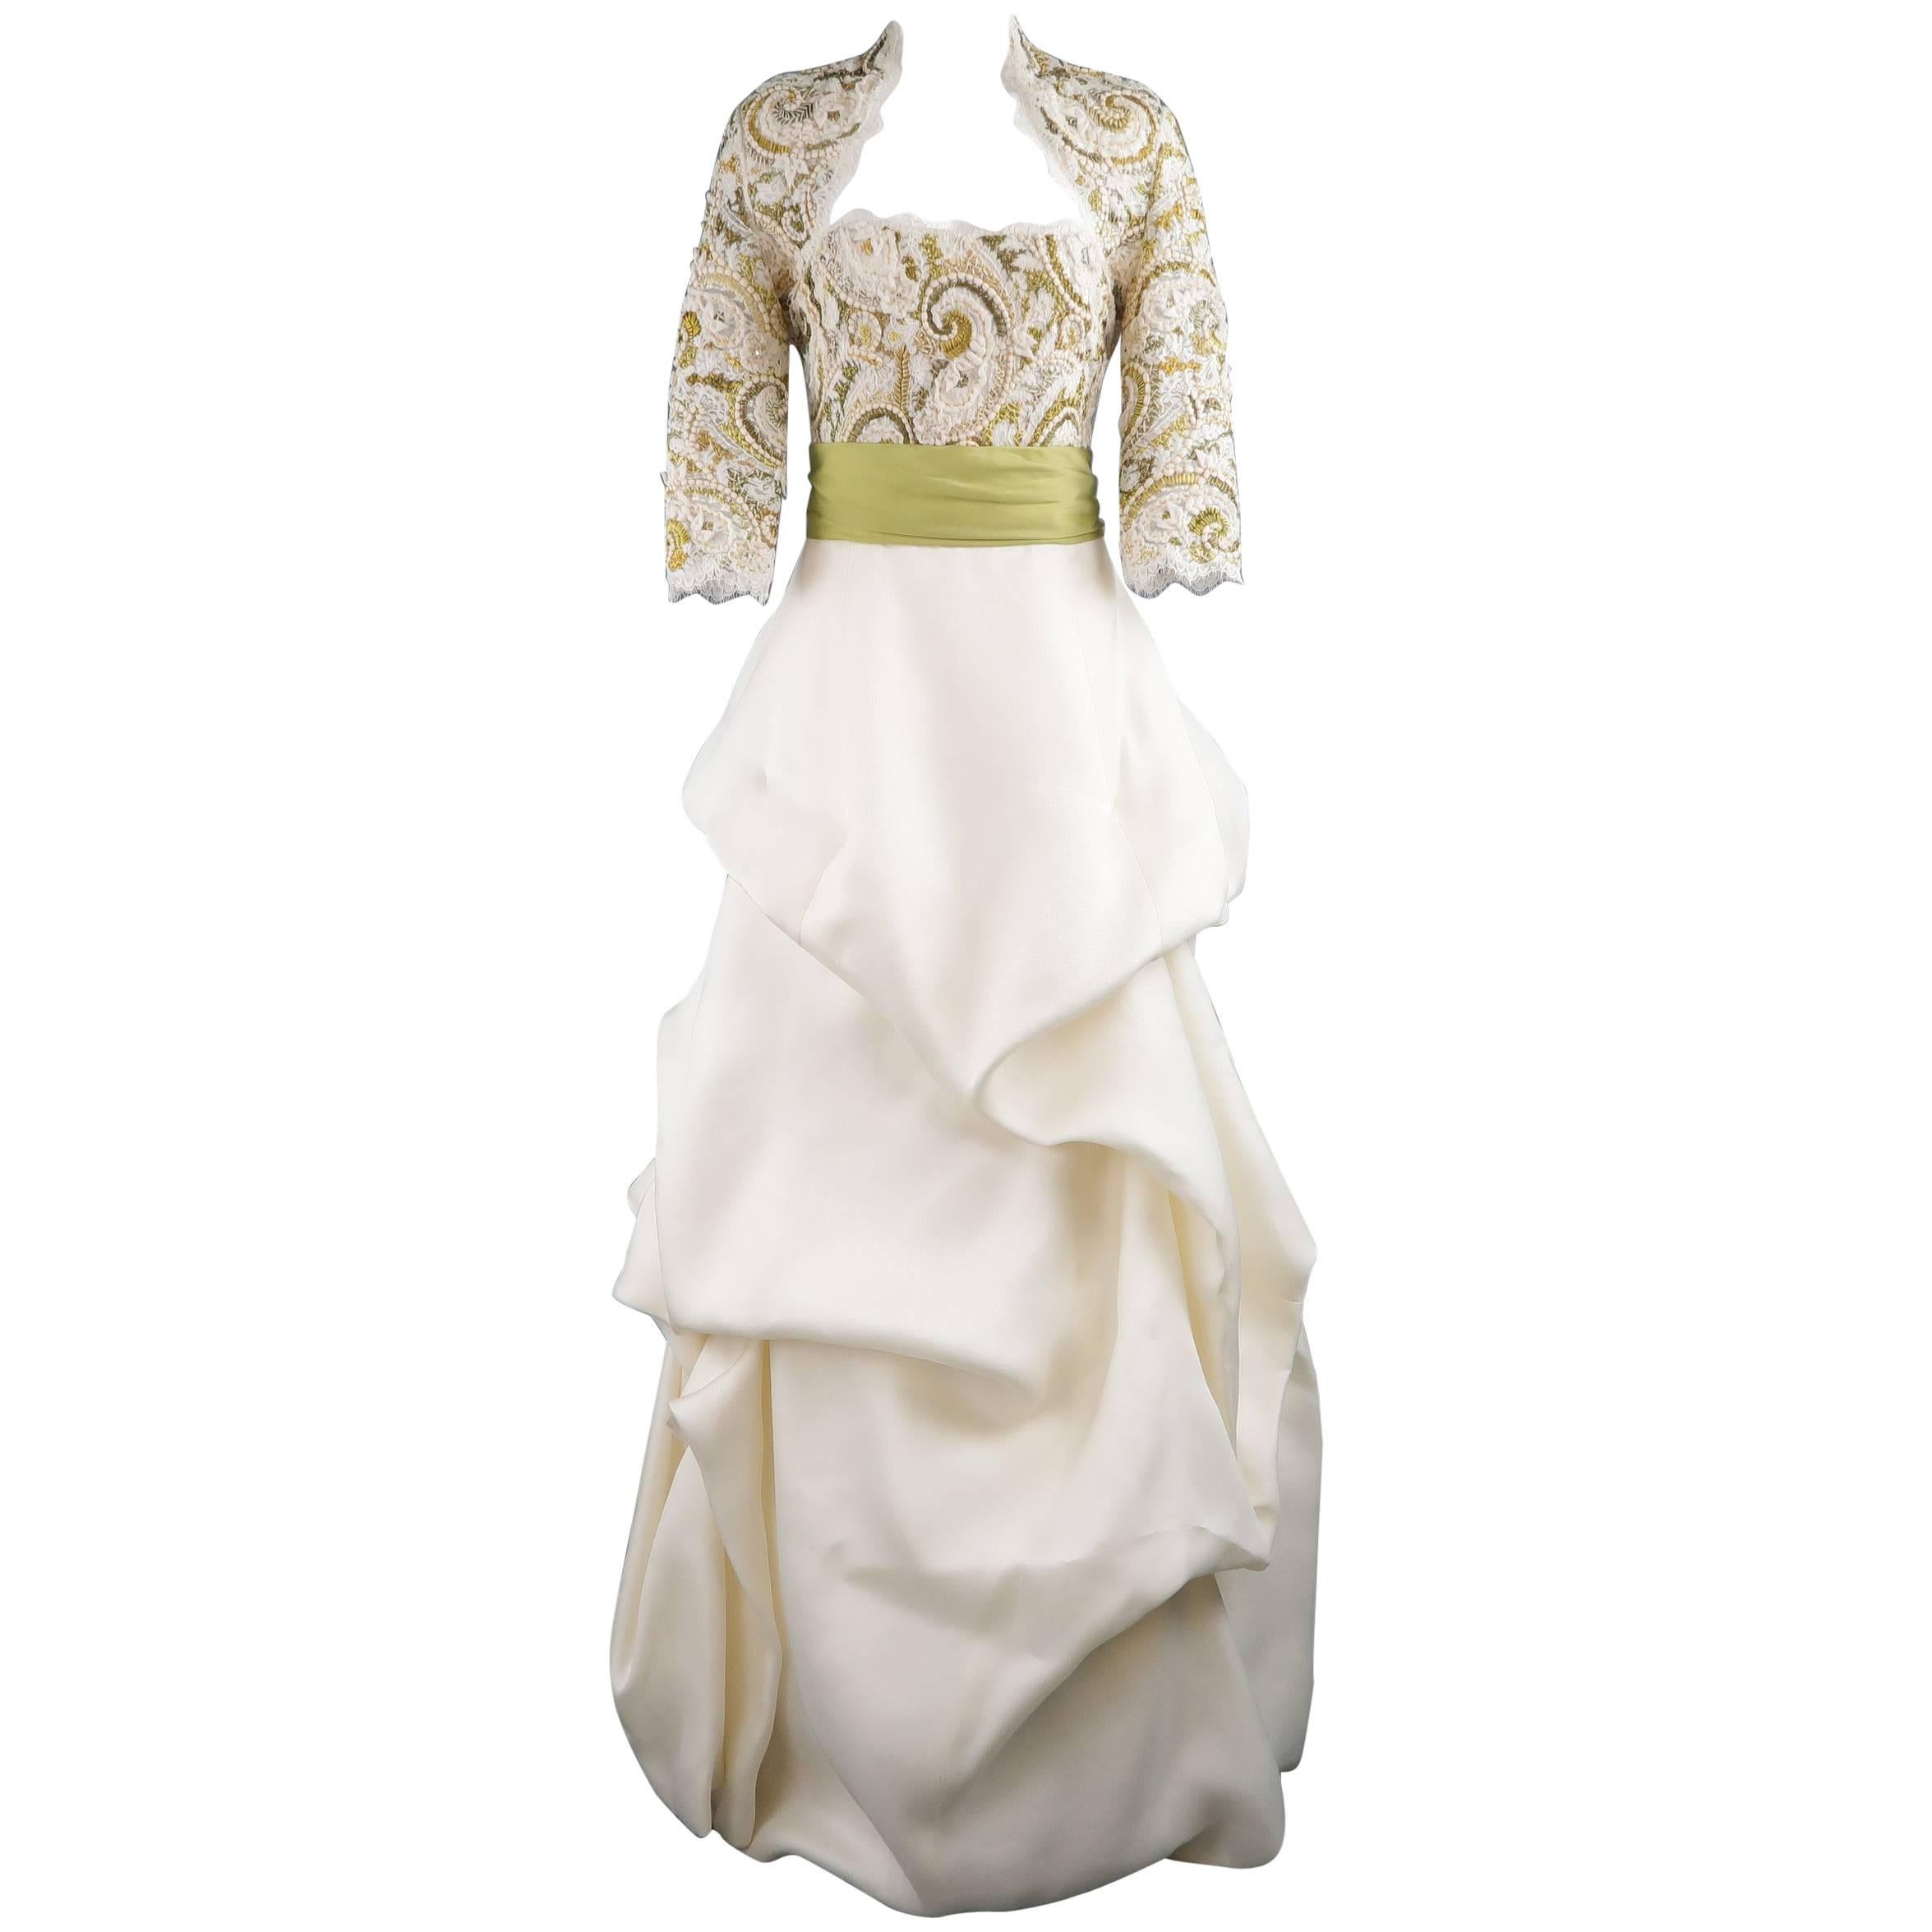 Monique Lhuillier Gown Dress Cream Gold Green Lace Bodice Bolero